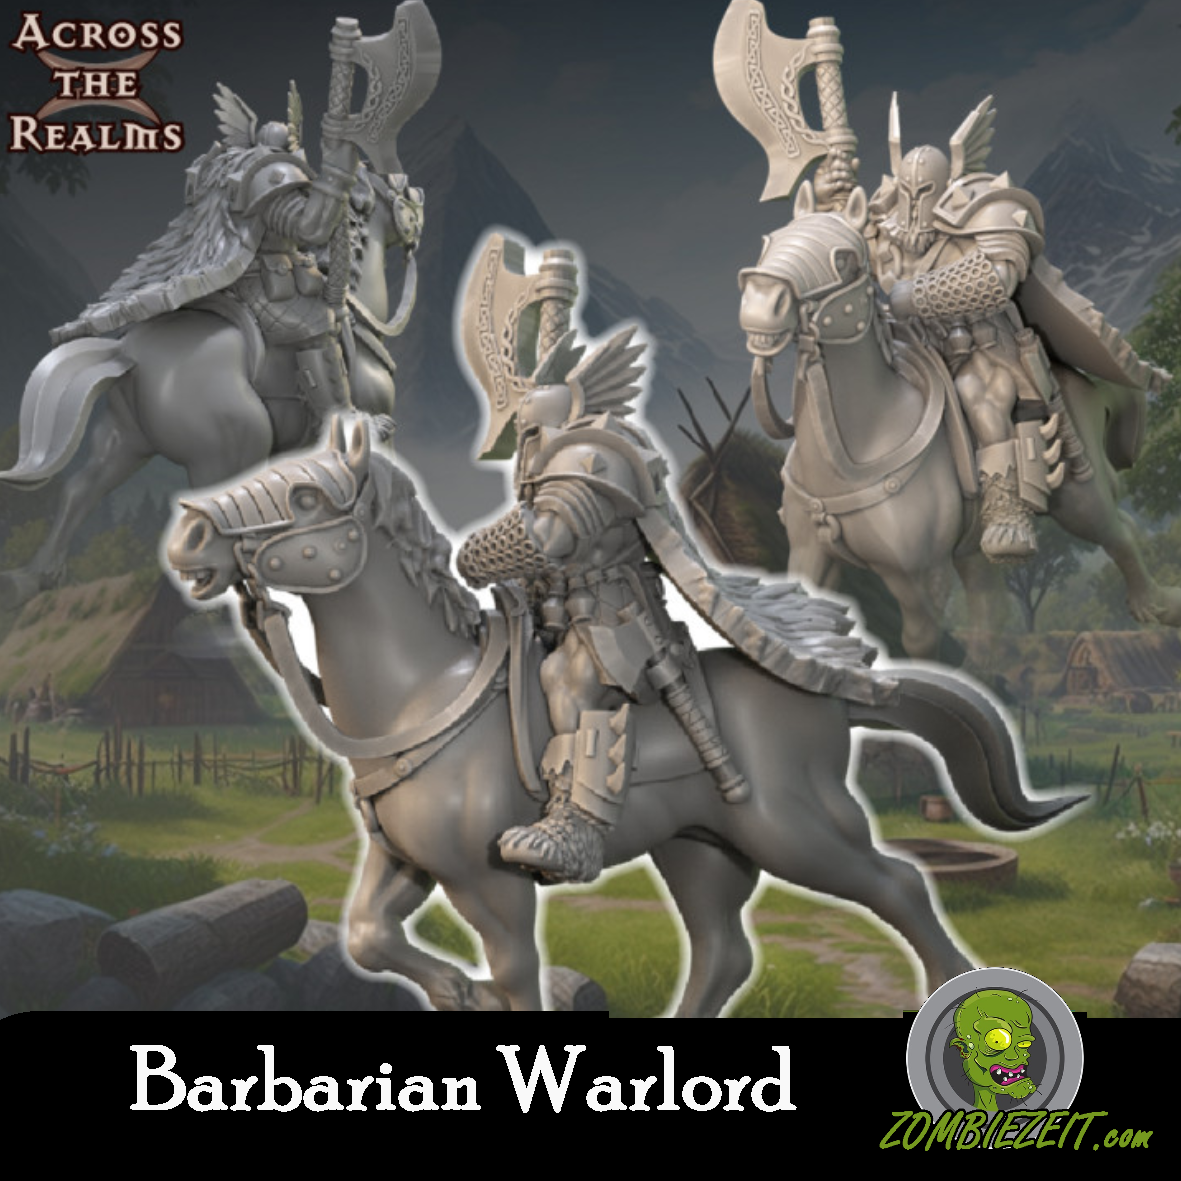 Barbarian Warlord